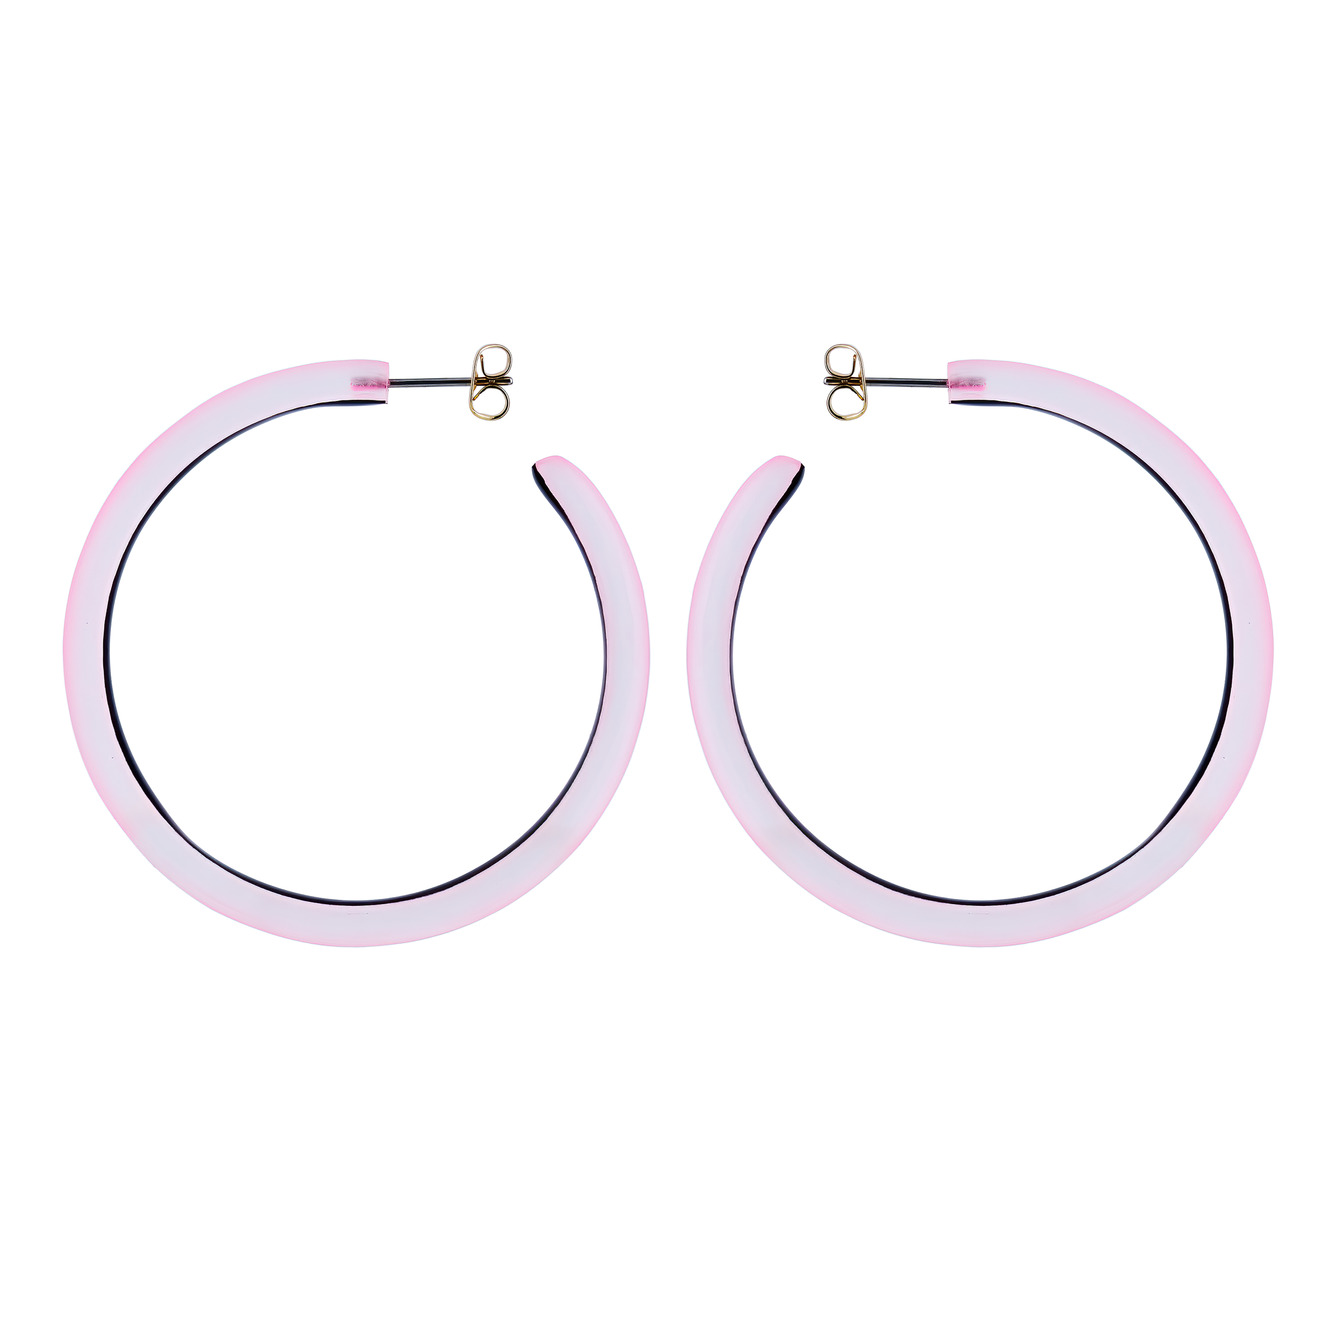 Alexis Bittar Розовые серьги-кольца с люцитовыми вставками серьги кольца ребристые розовые с золотом x1020222 19